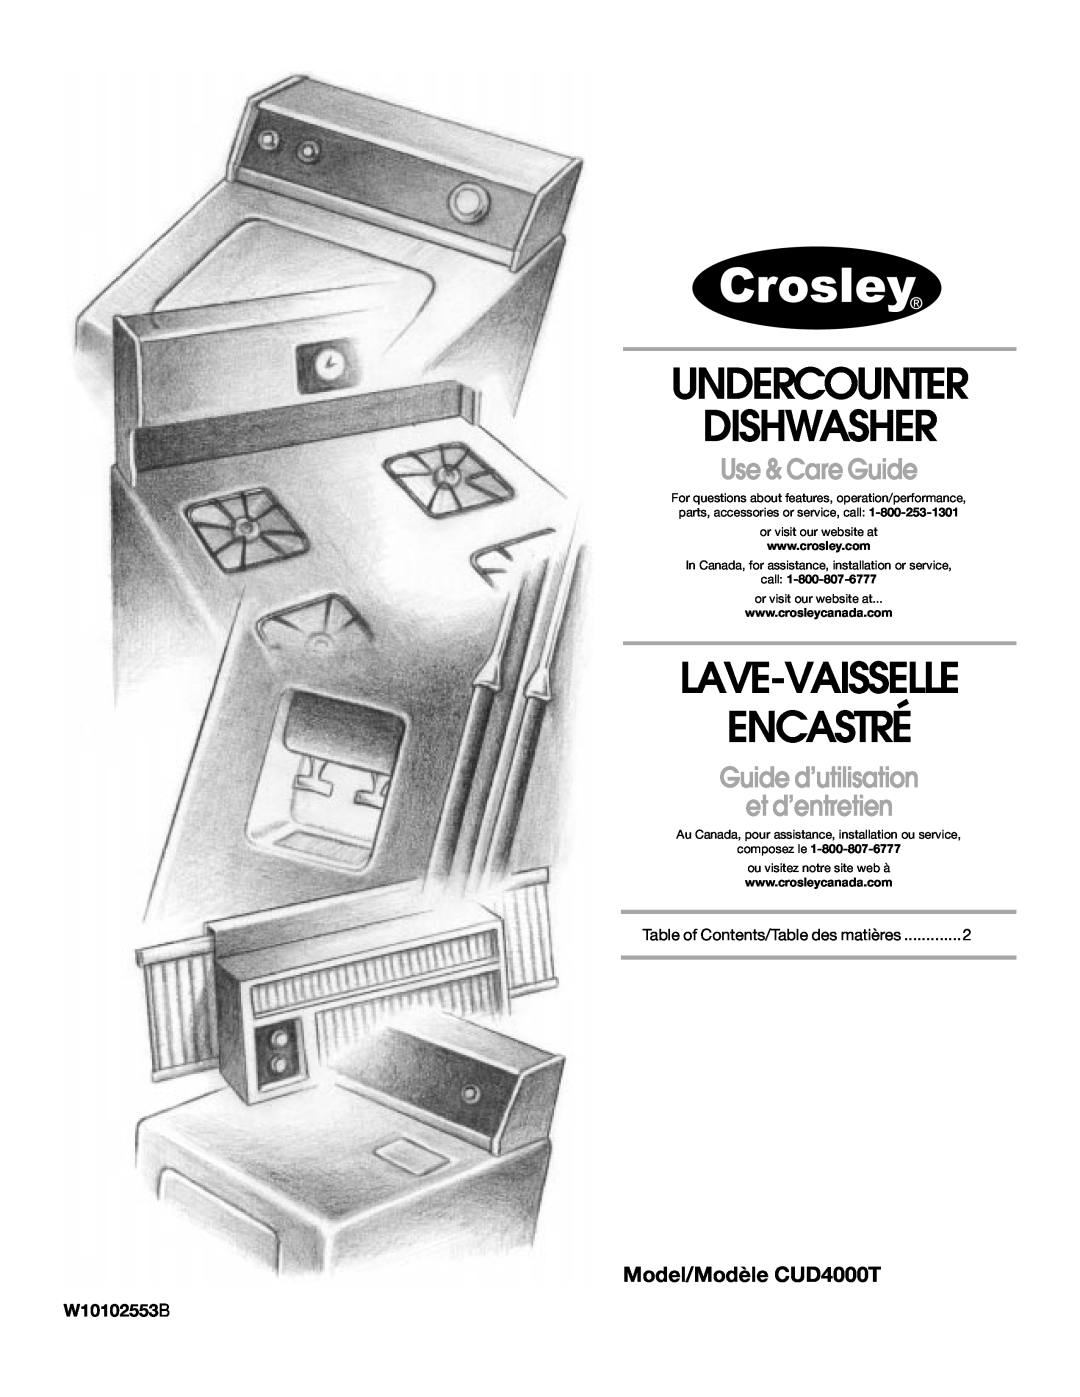 Crosley manual Model/Modèle CUD4000T, W10102553B, Undercounter Dishwasher, Lave-Vaisselle Encastré, Use & Care Guide 